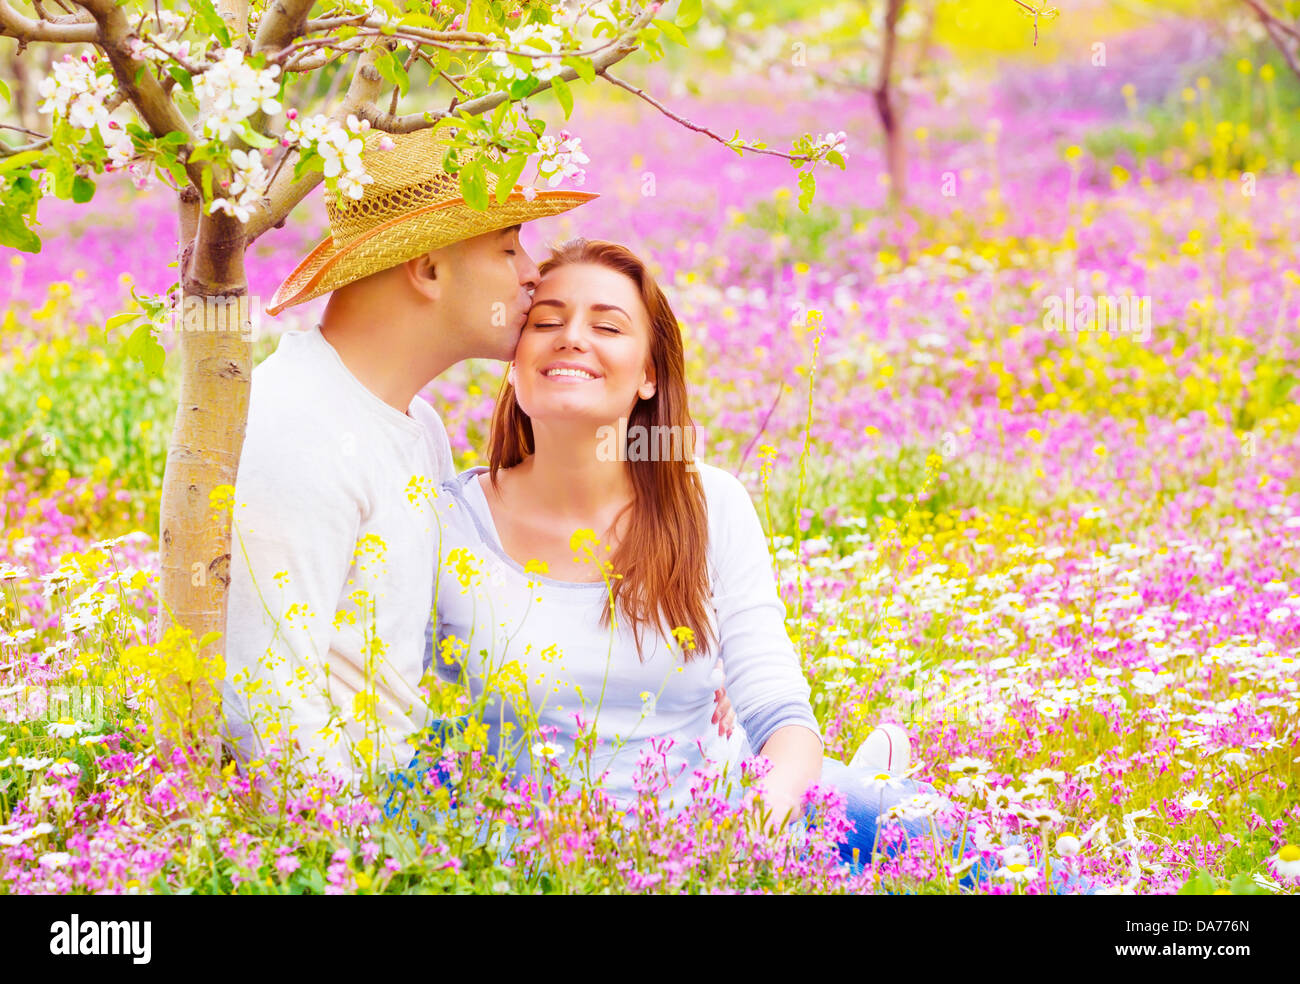 Les amateurs de plein air, les baisers heureux date romantique dans le jardin en fleurs, magnifique jeune famille, l'affection et l'amour concept Banque D'Images